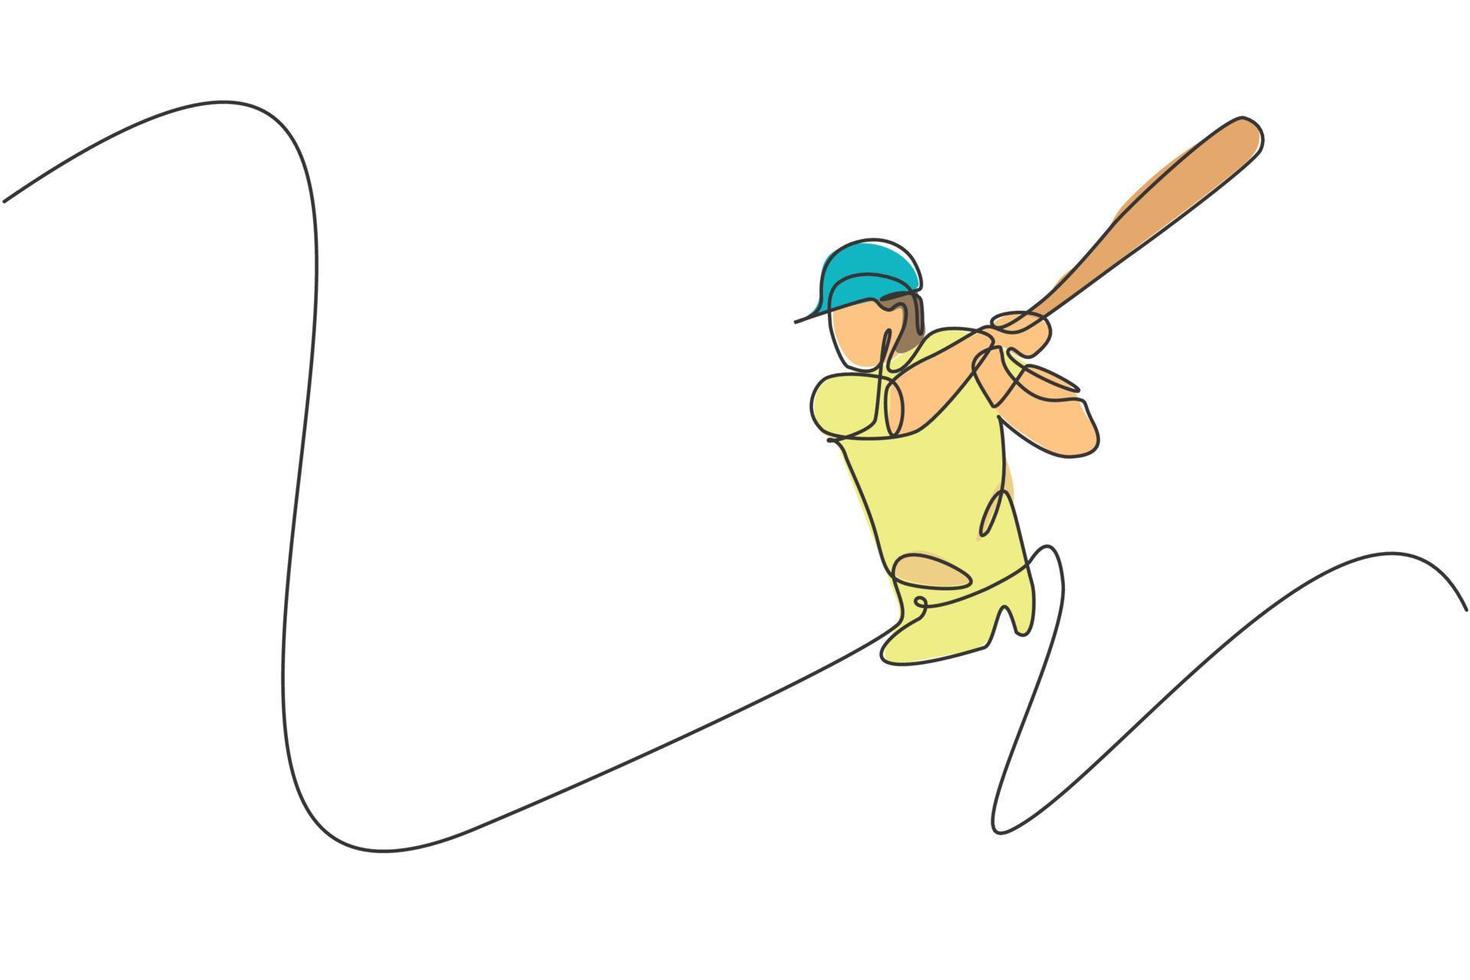 un disegno a linea continua dell'esercizio del giocatore di baseball del giovane sportivo per colpire la palla. concetto di sport competitivo. illustrazione grafica vettoriale di disegno dinamico a linea singola per poster di promozione